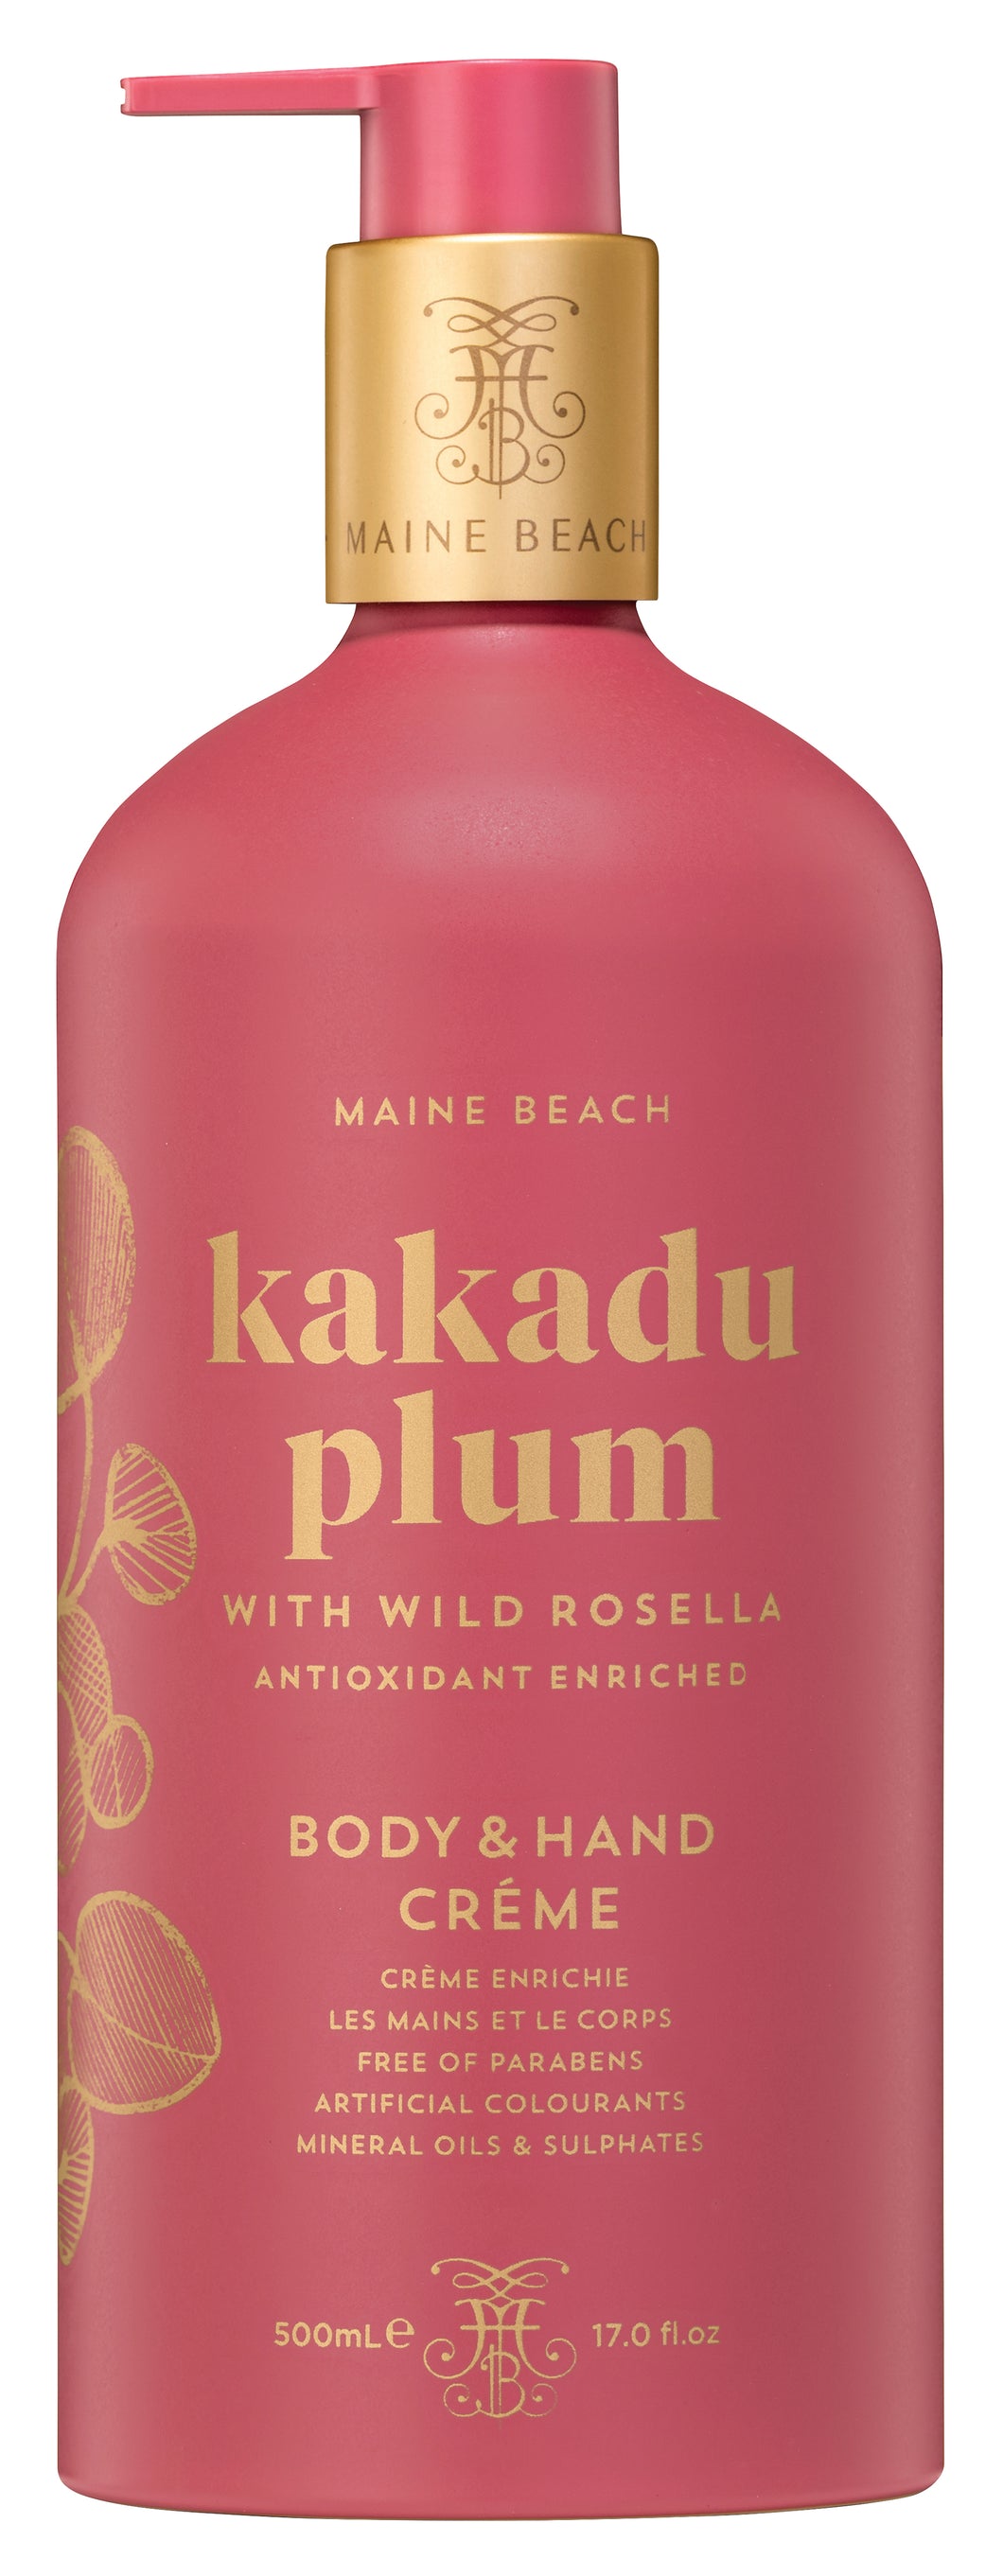 Maine Beach Kakadu Plum Hand & Body Creme 500ml